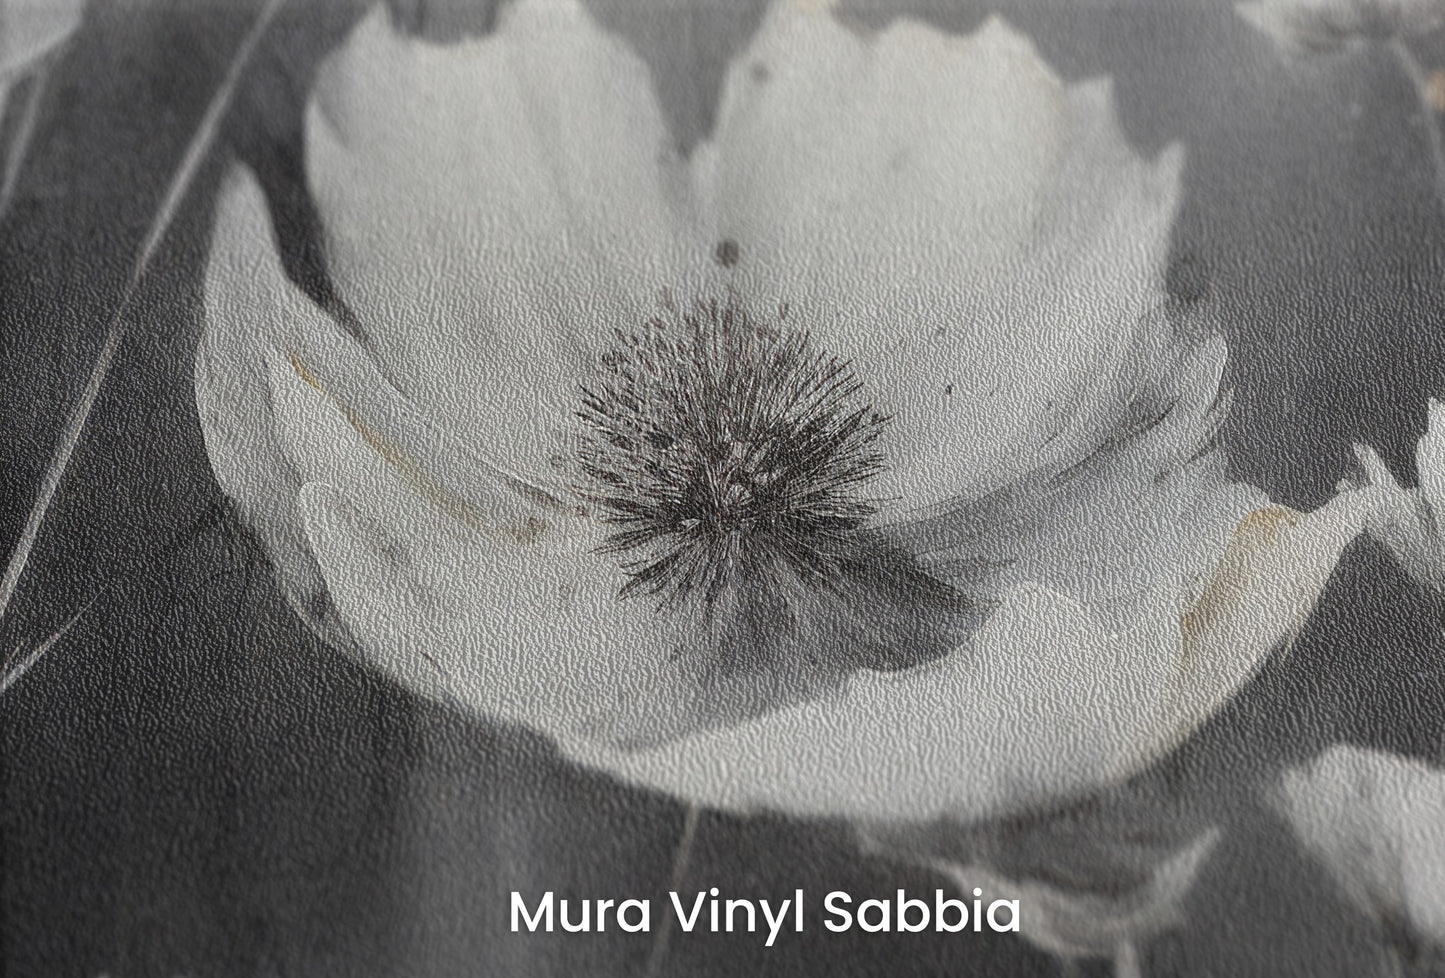 Zbliżenie na artystyczną fototapetę o nazwie ETHEREAL NOCTURNE BLOOMS na podłożu Mura Vinyl Sabbia struktura grubego ziarna piasku.